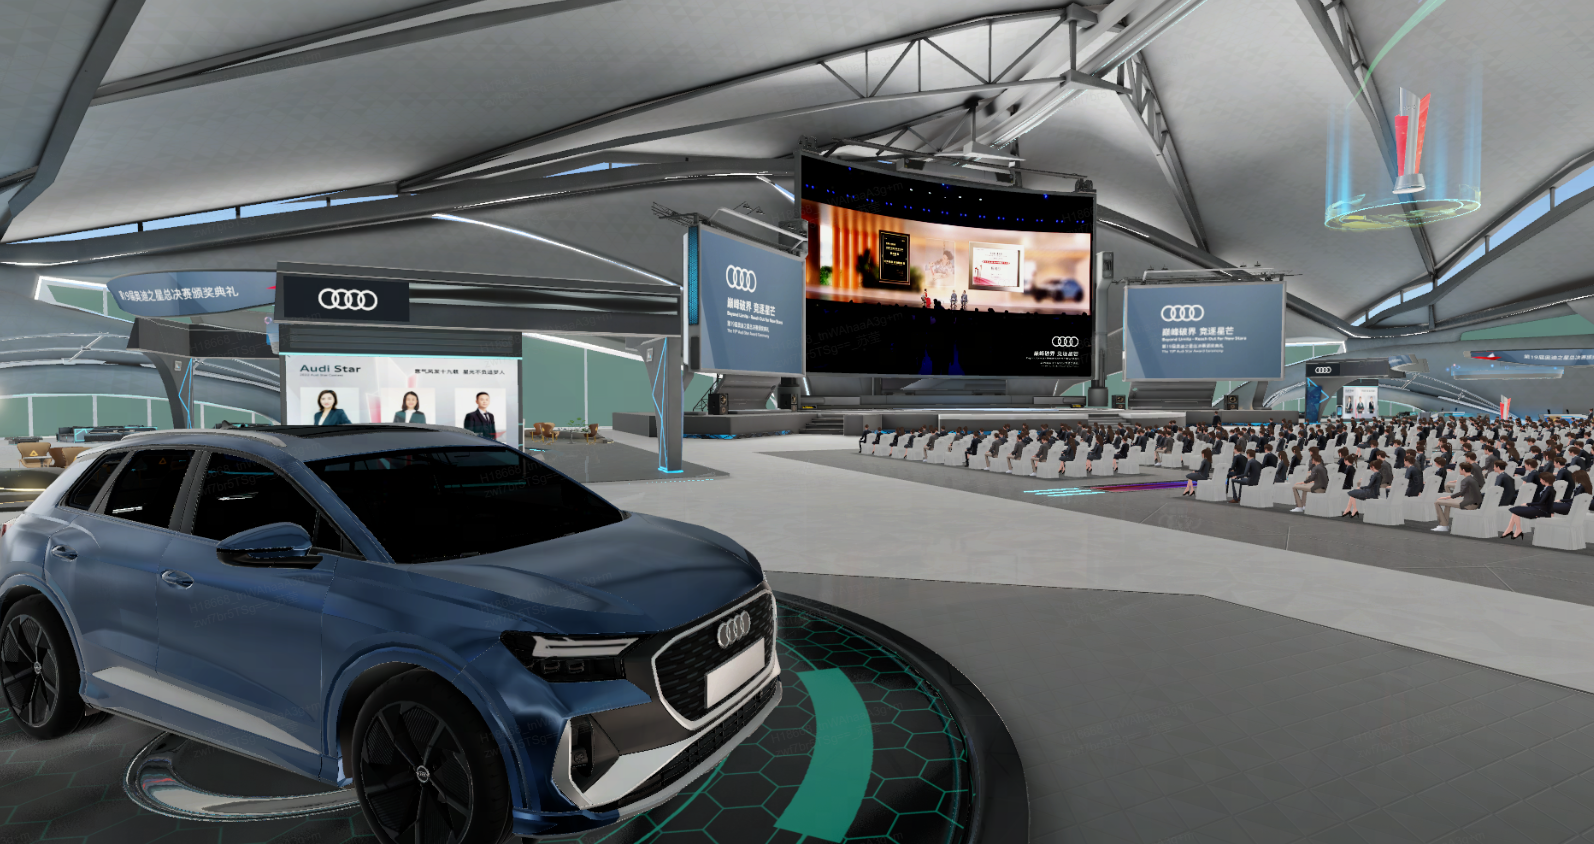 图片展示了一场室内活动，中心摆放着一辆蓝色奥迪汽车，背景是大屏幕和观众席，现场布置现代且科技感强。